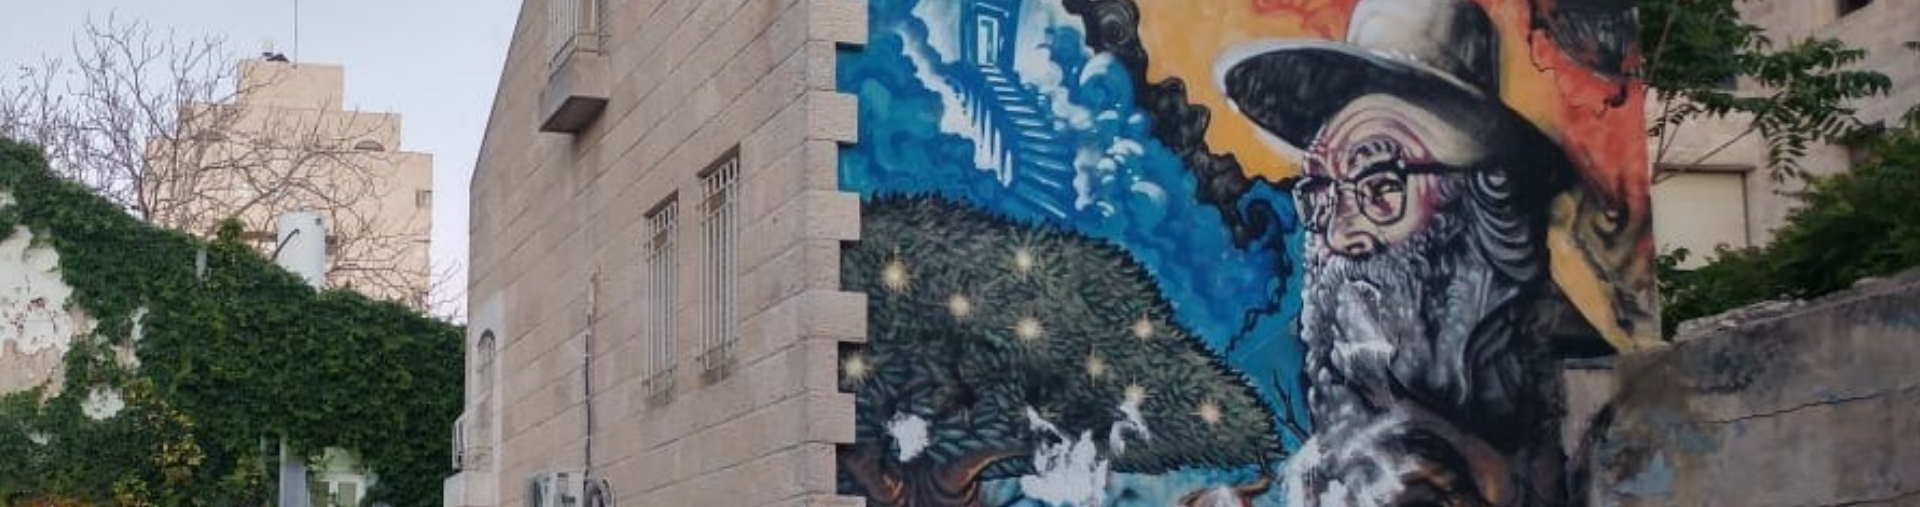 אמנות רחוב בירושלים